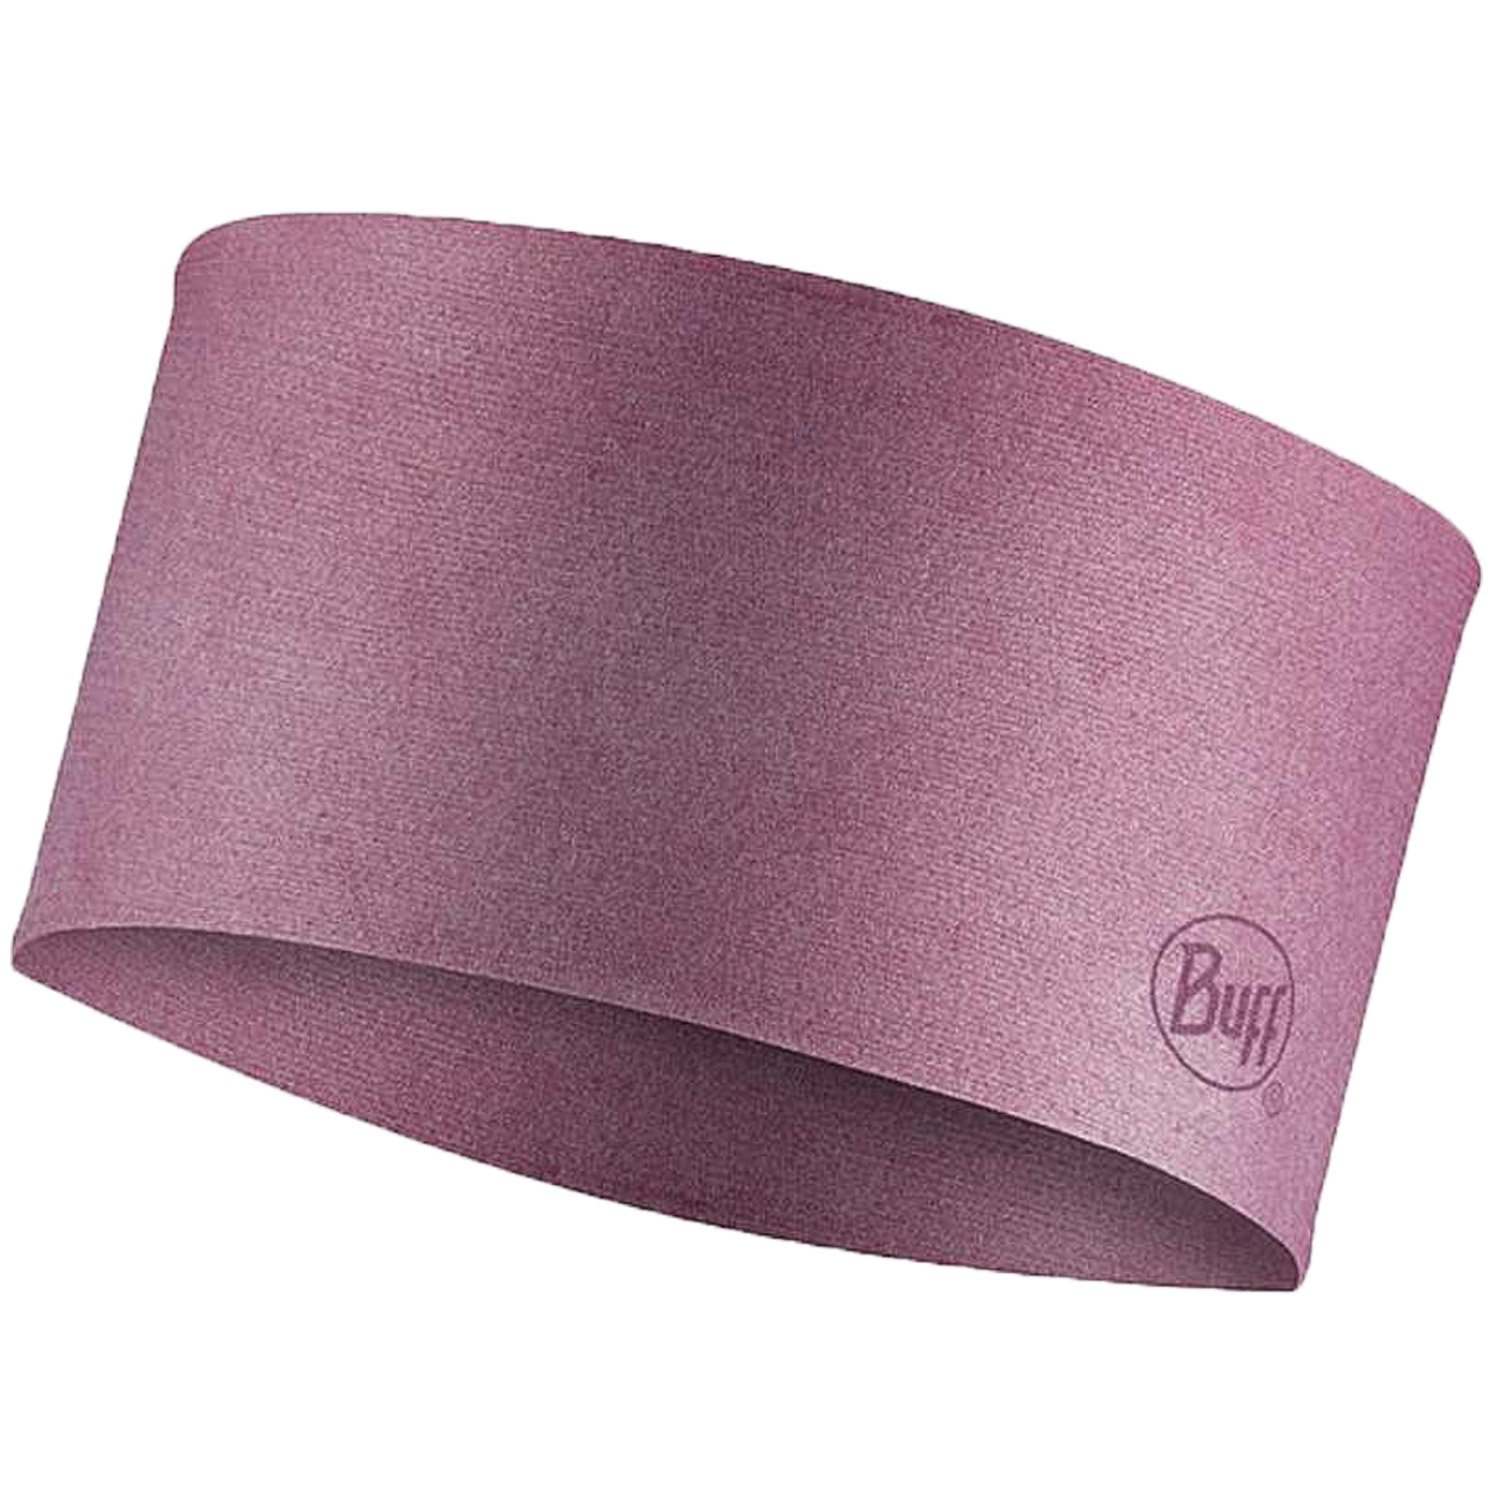 Повязка Buff Coolnet Uv Wide Headband Tulip, розовый, 130056.650.10.00 повязка buff coolnet uv slim headband zat multi женская 131423 555 10 00